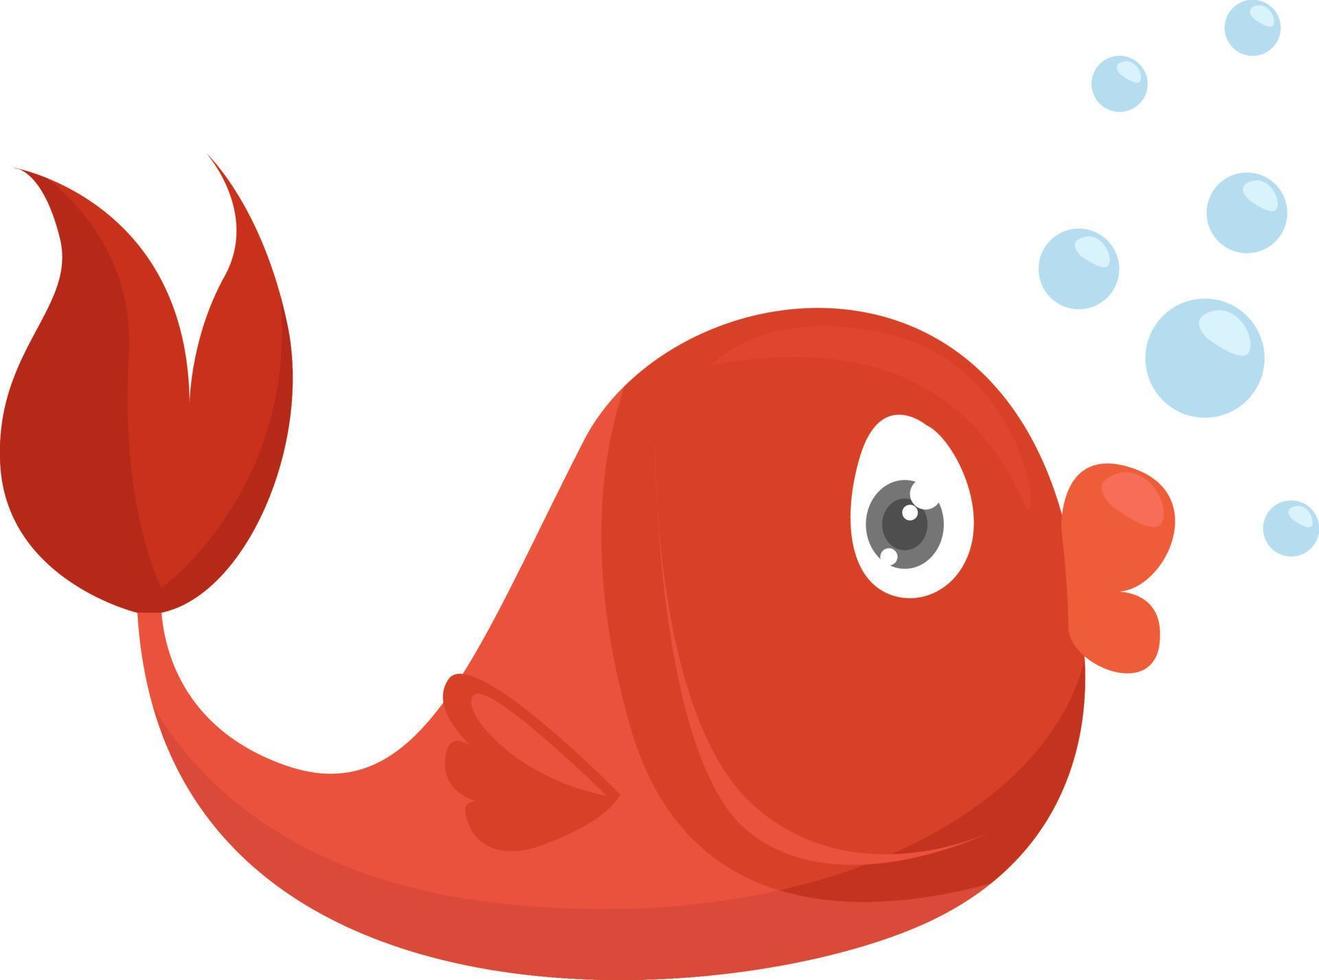 pequeno peixe vermelho, ilustração, vetor em fundo branco.